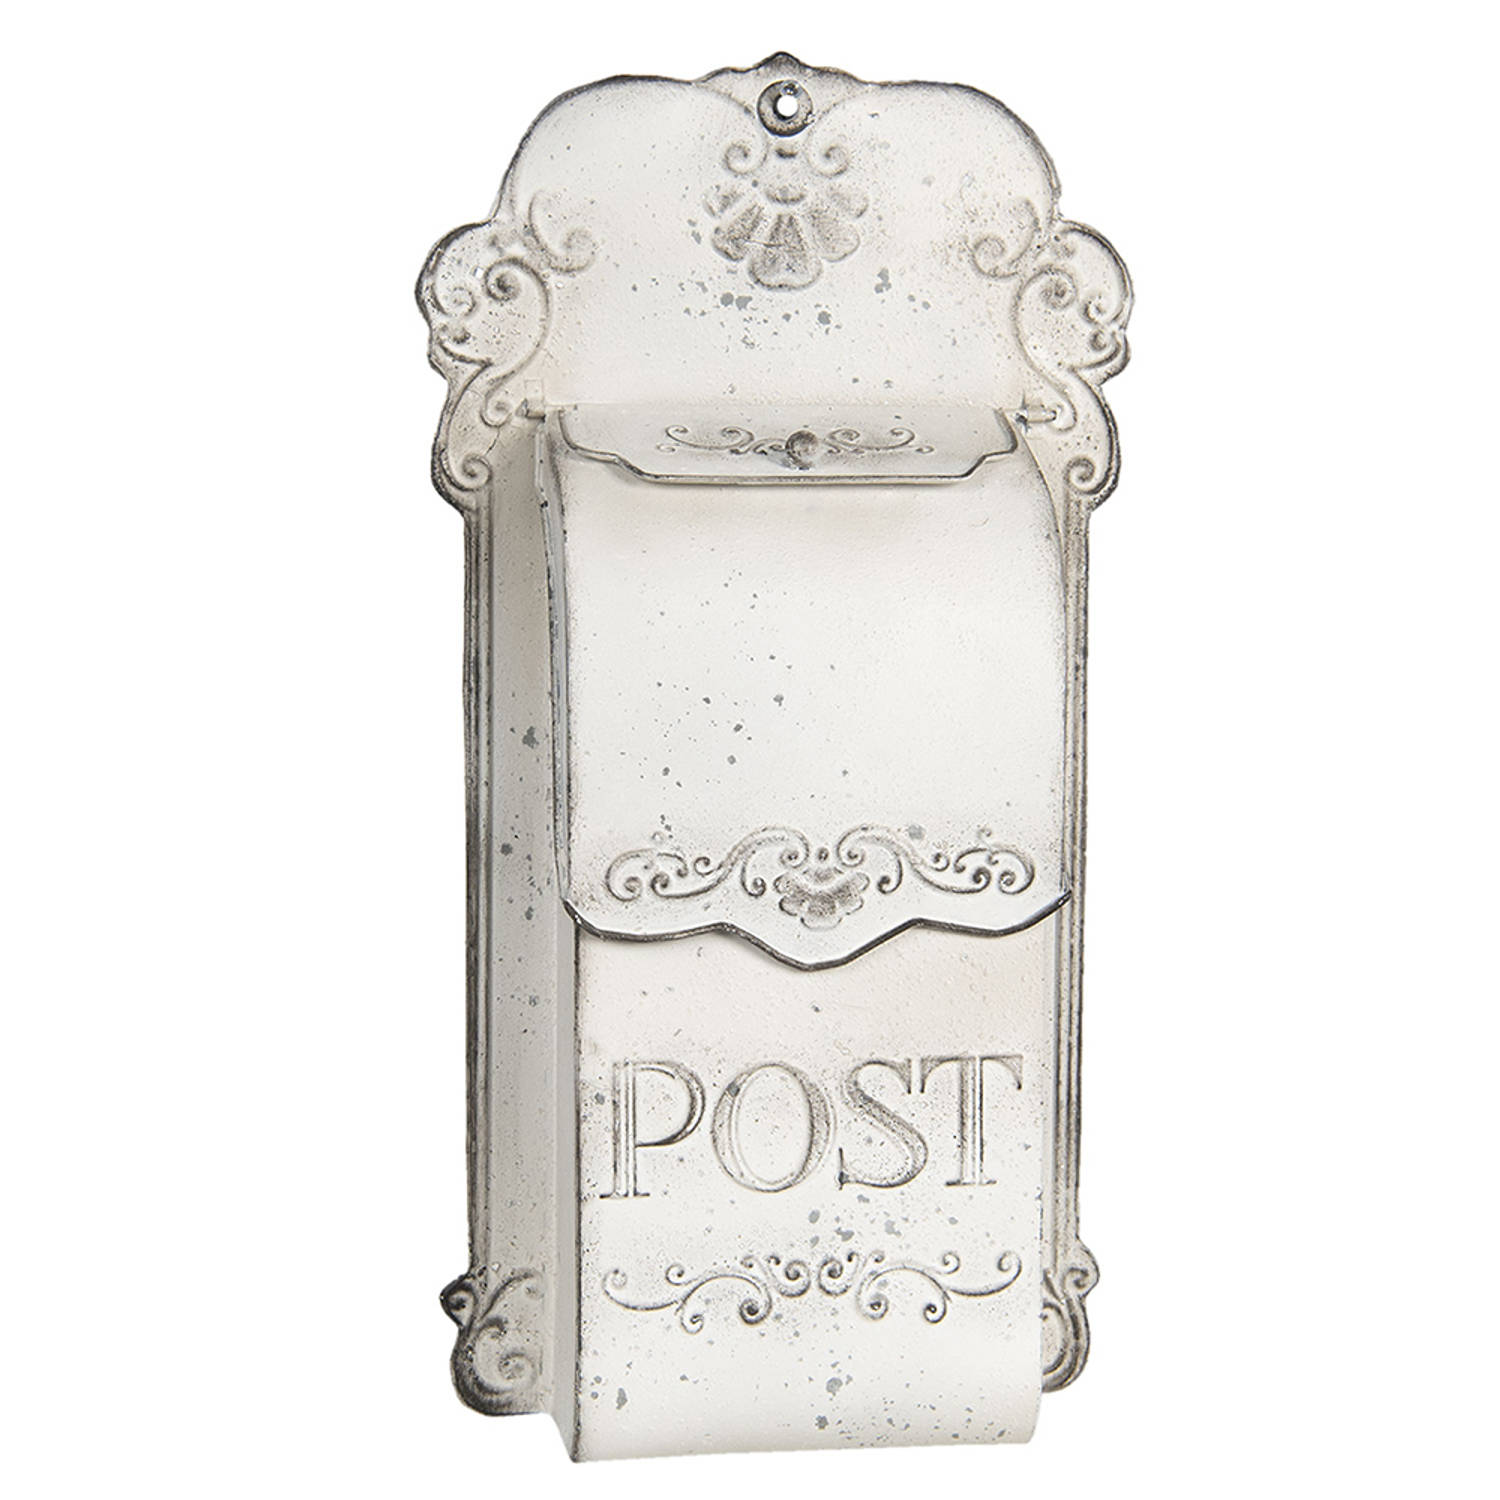 HAES DECO - Brievenbus vintage wit metaal met ornamenten en tekst ""POST"", formaat 24x8x46 cm